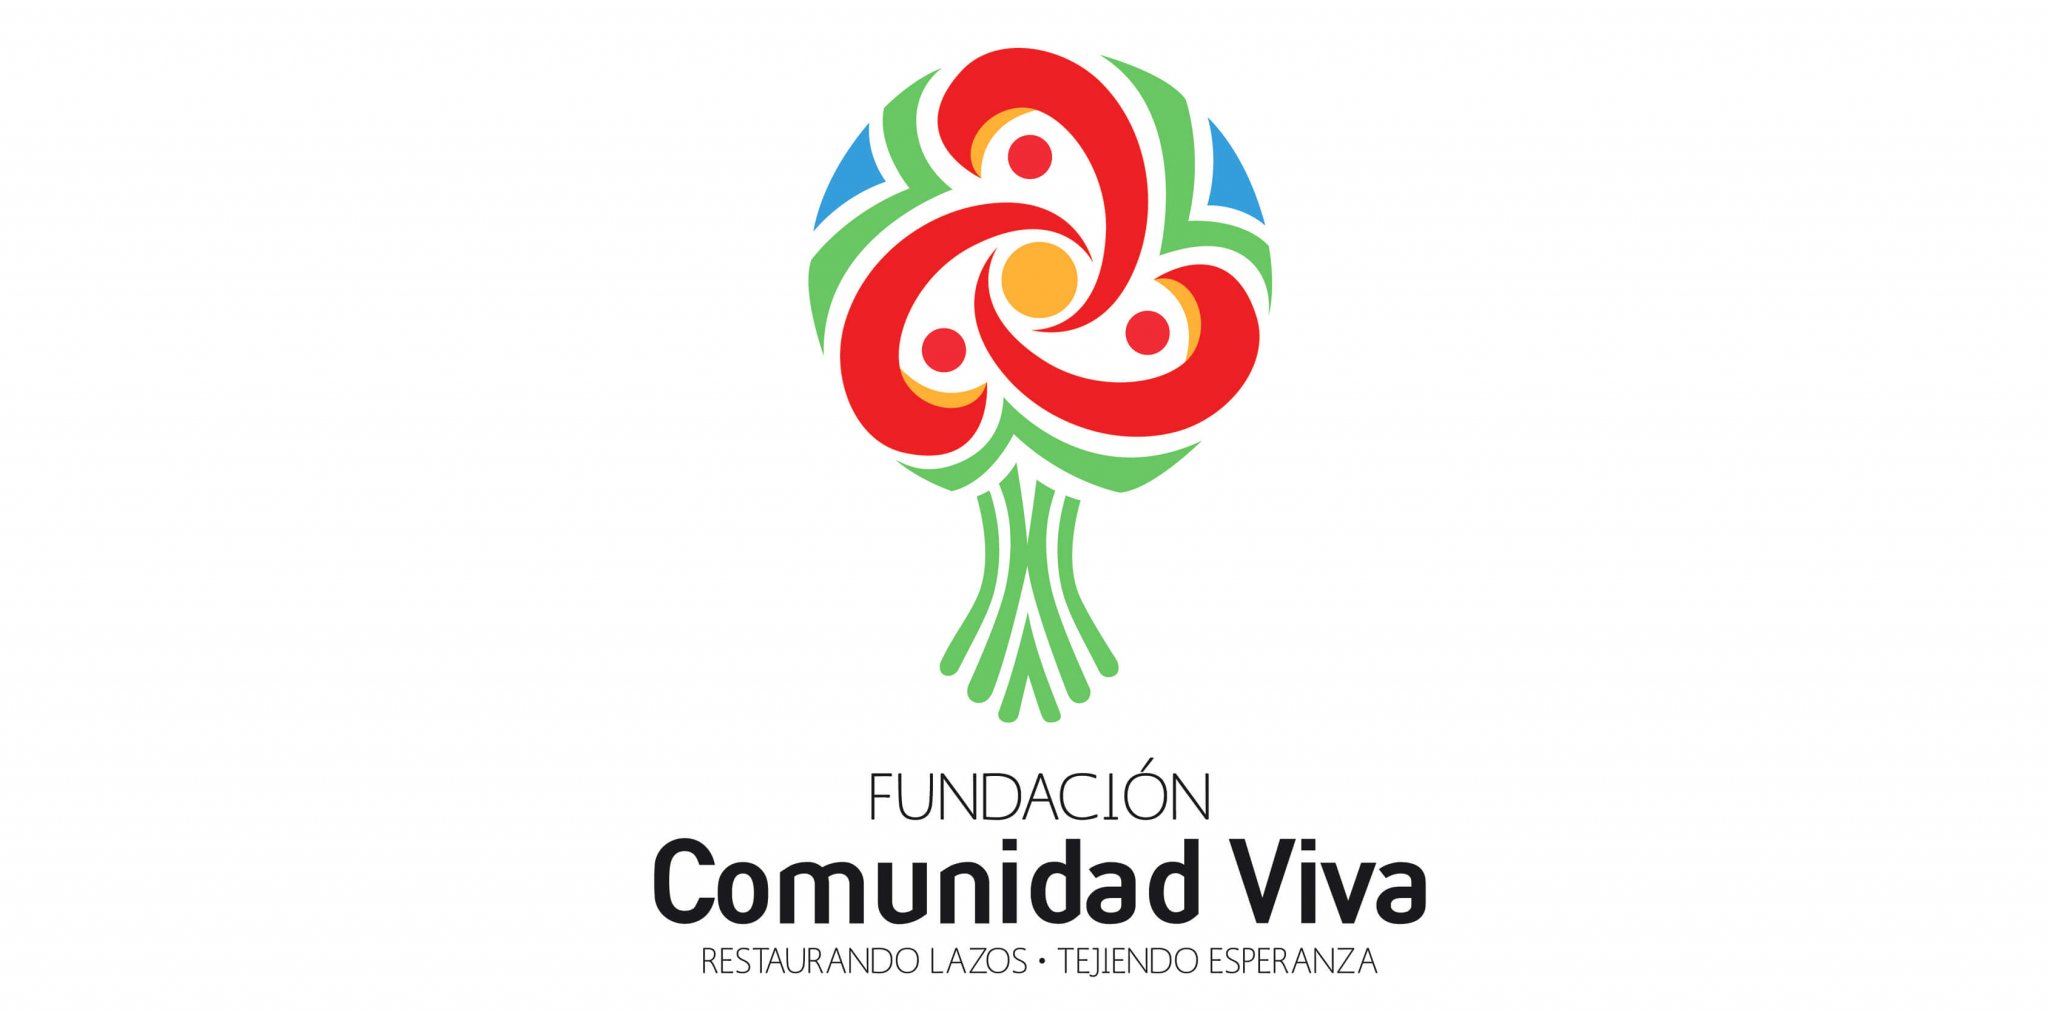 Fundación Comunidad Viva